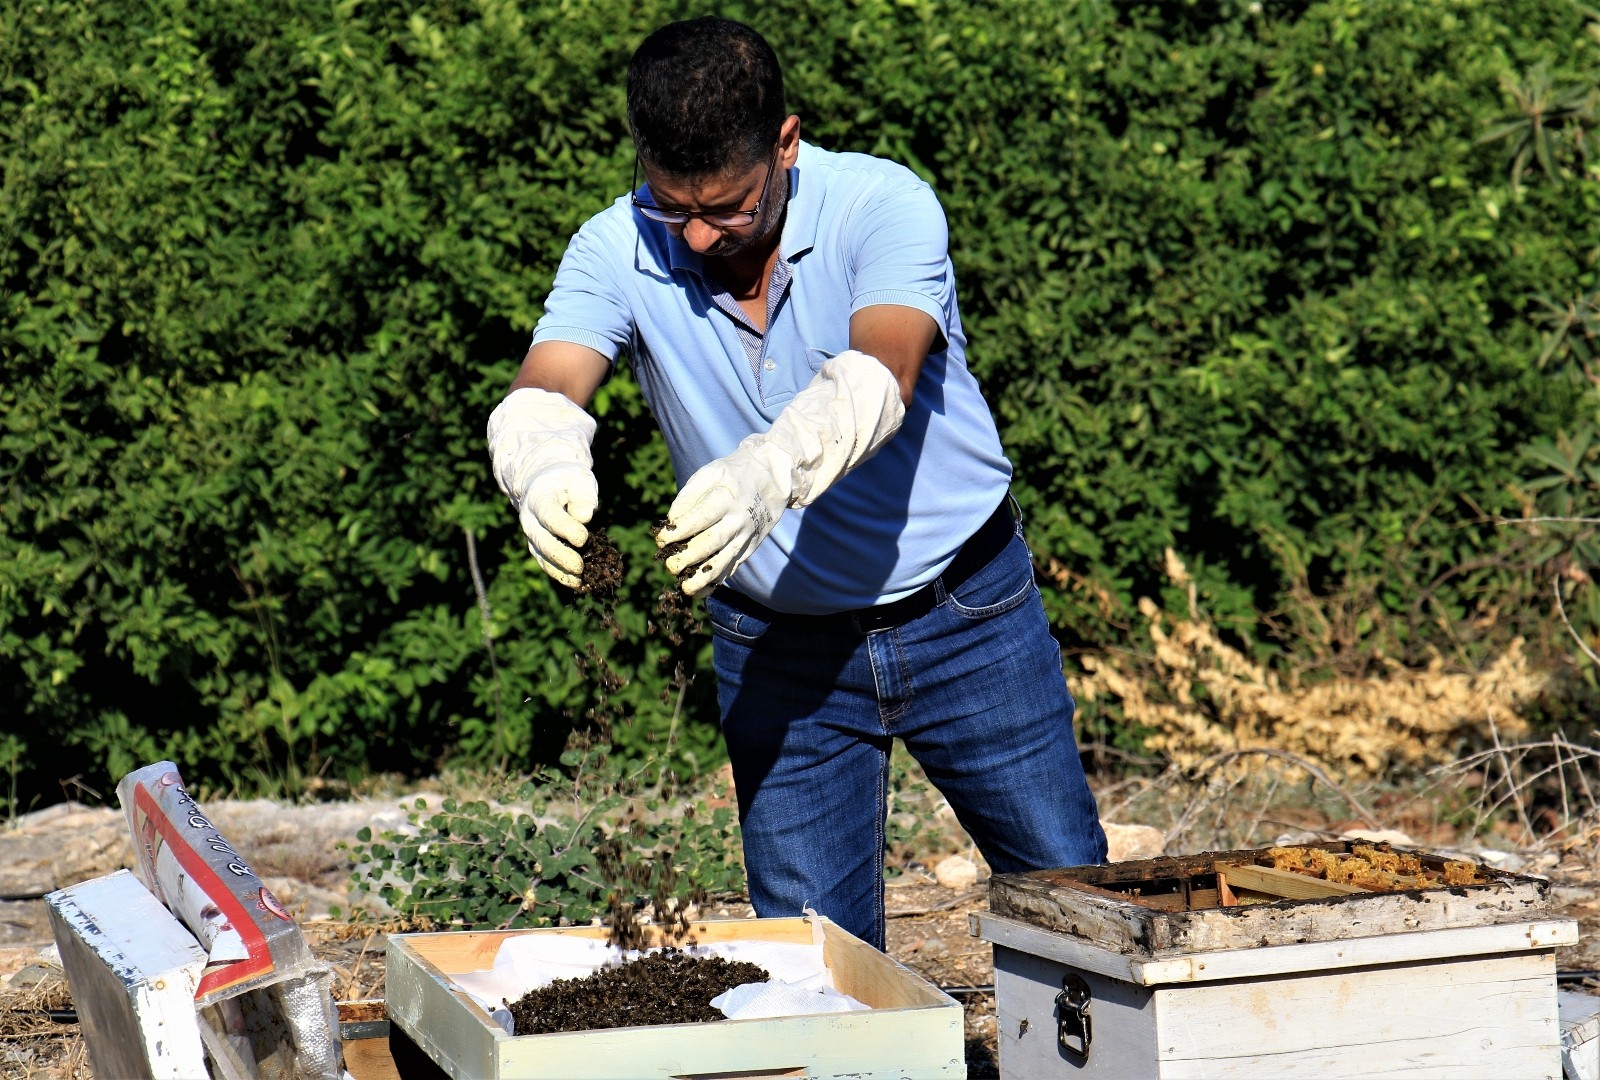 1 milyondan fazla arısı zehirlendi, ”Hepsini çalsalar canım bu kadar yanmazdı”